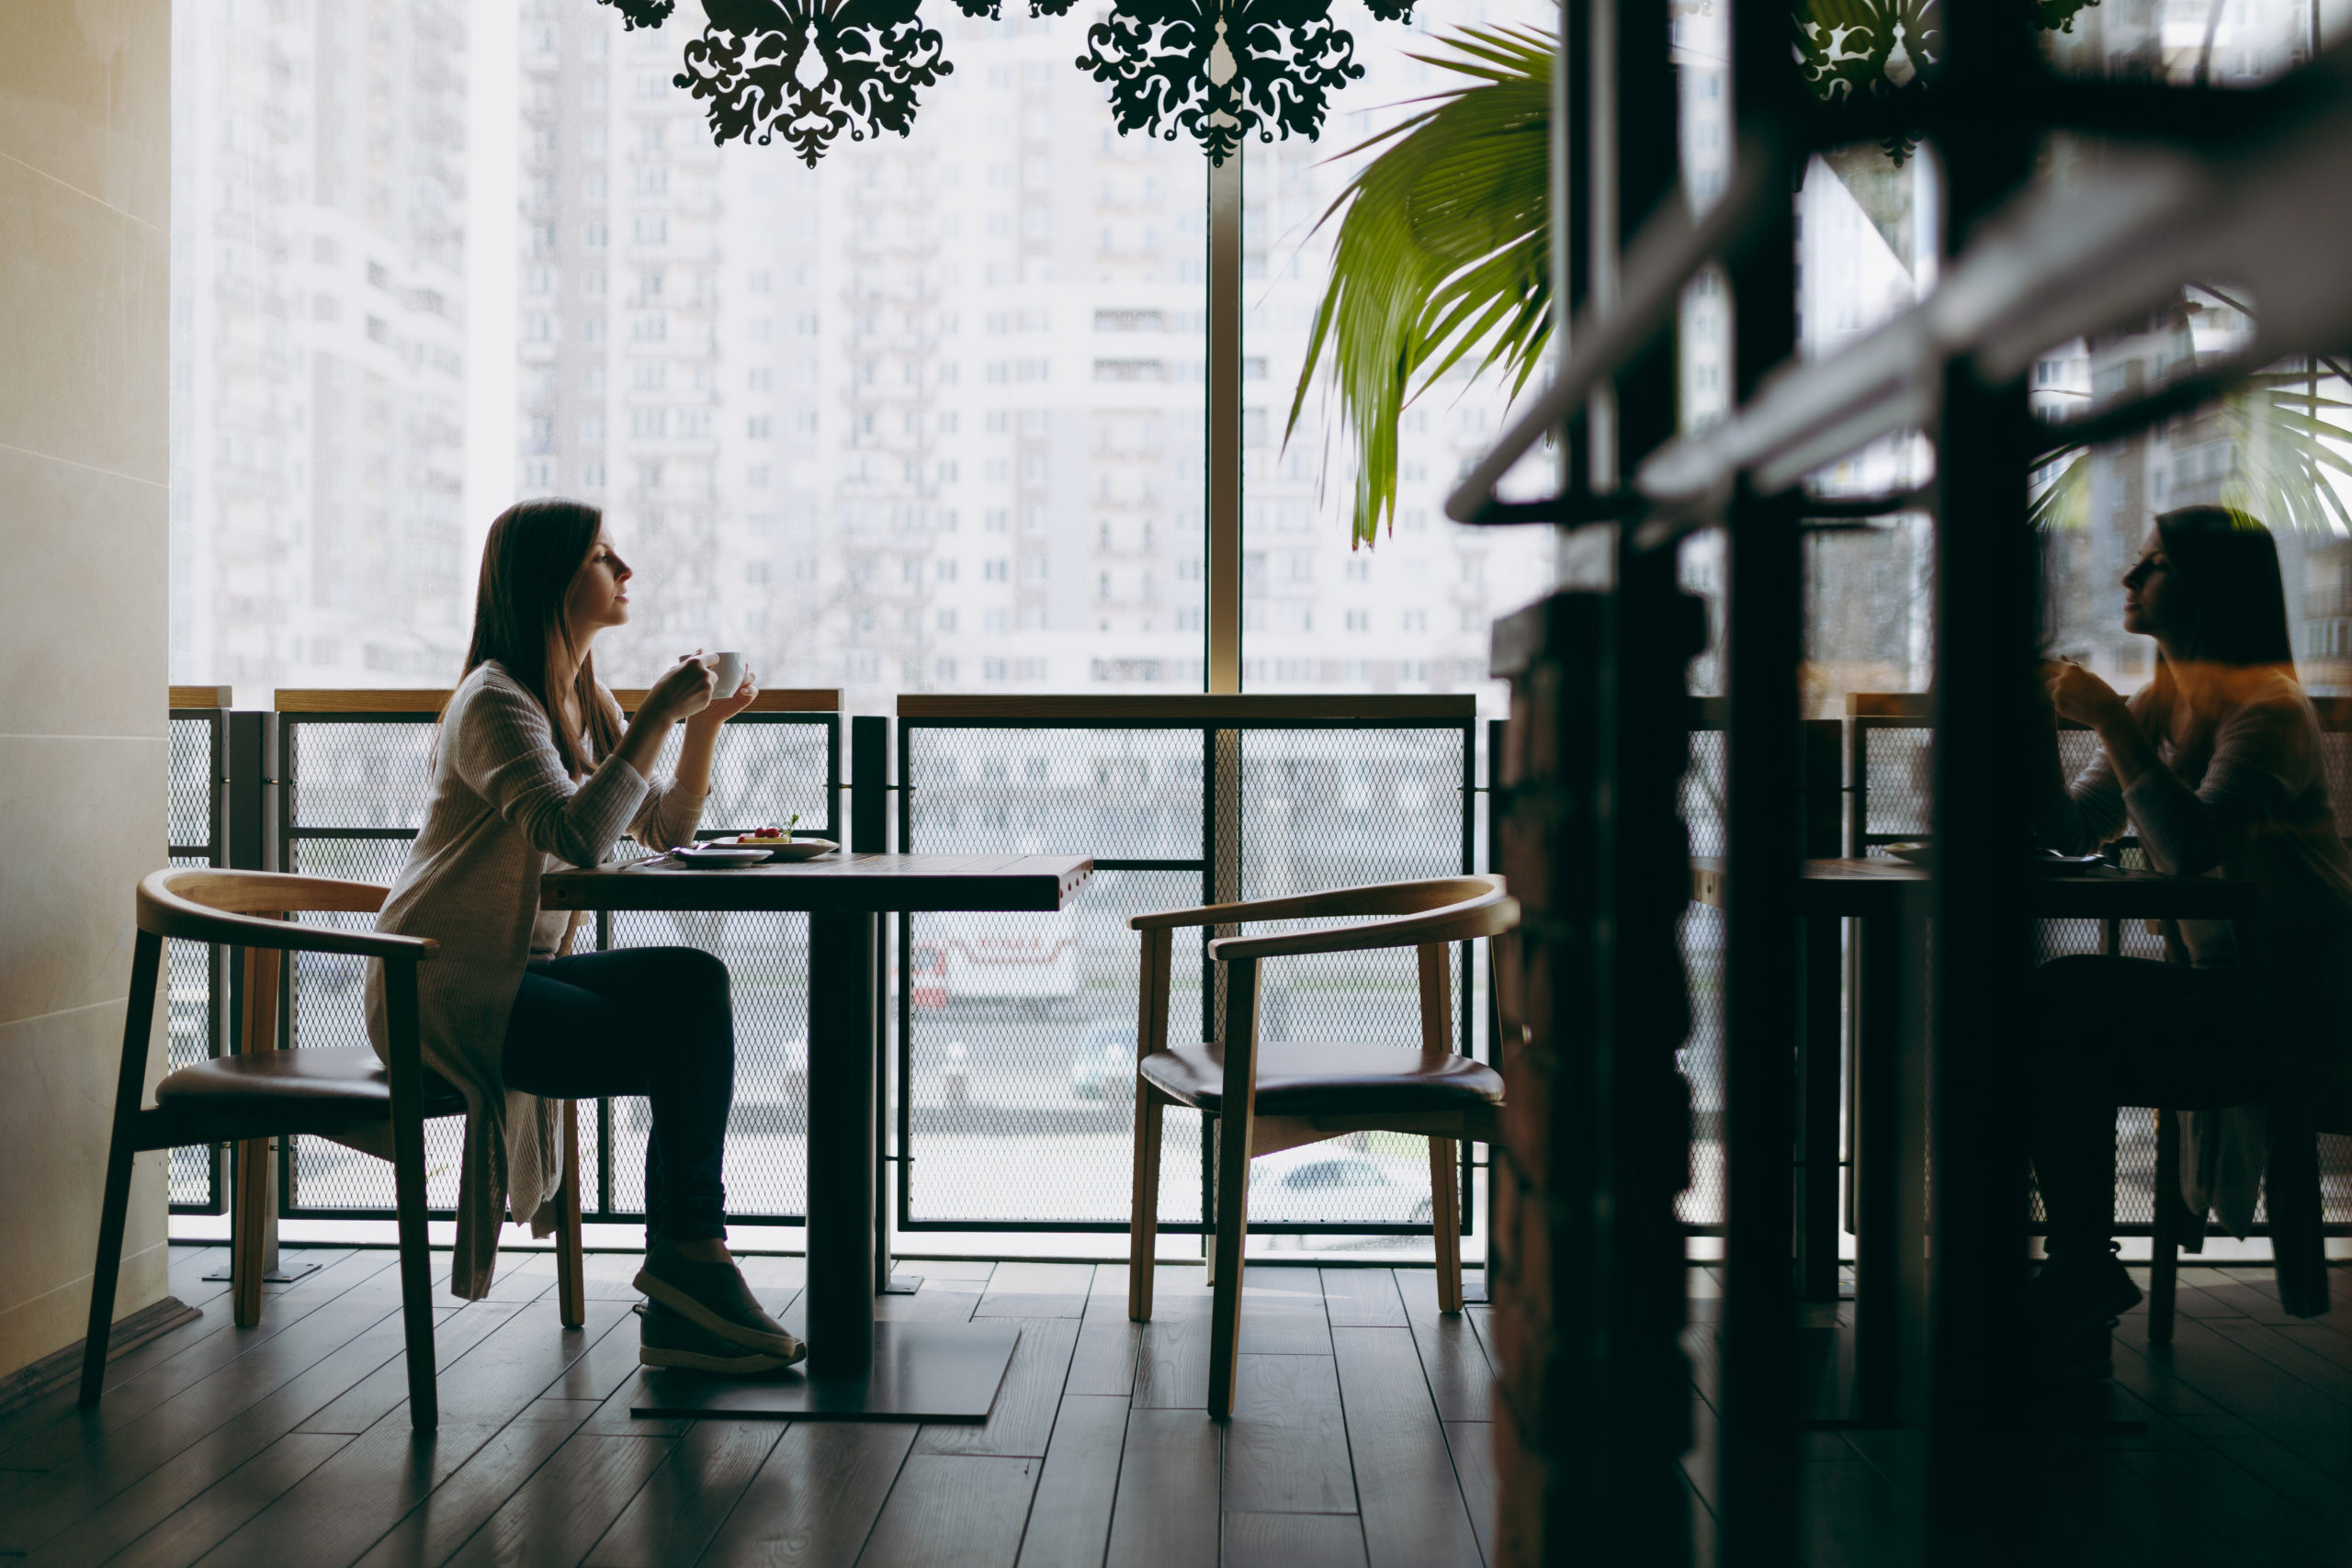 Занять место за столиком. Working место в кофейне у окна. Человек с кофе у жалюзи. Студия Shutterstock.